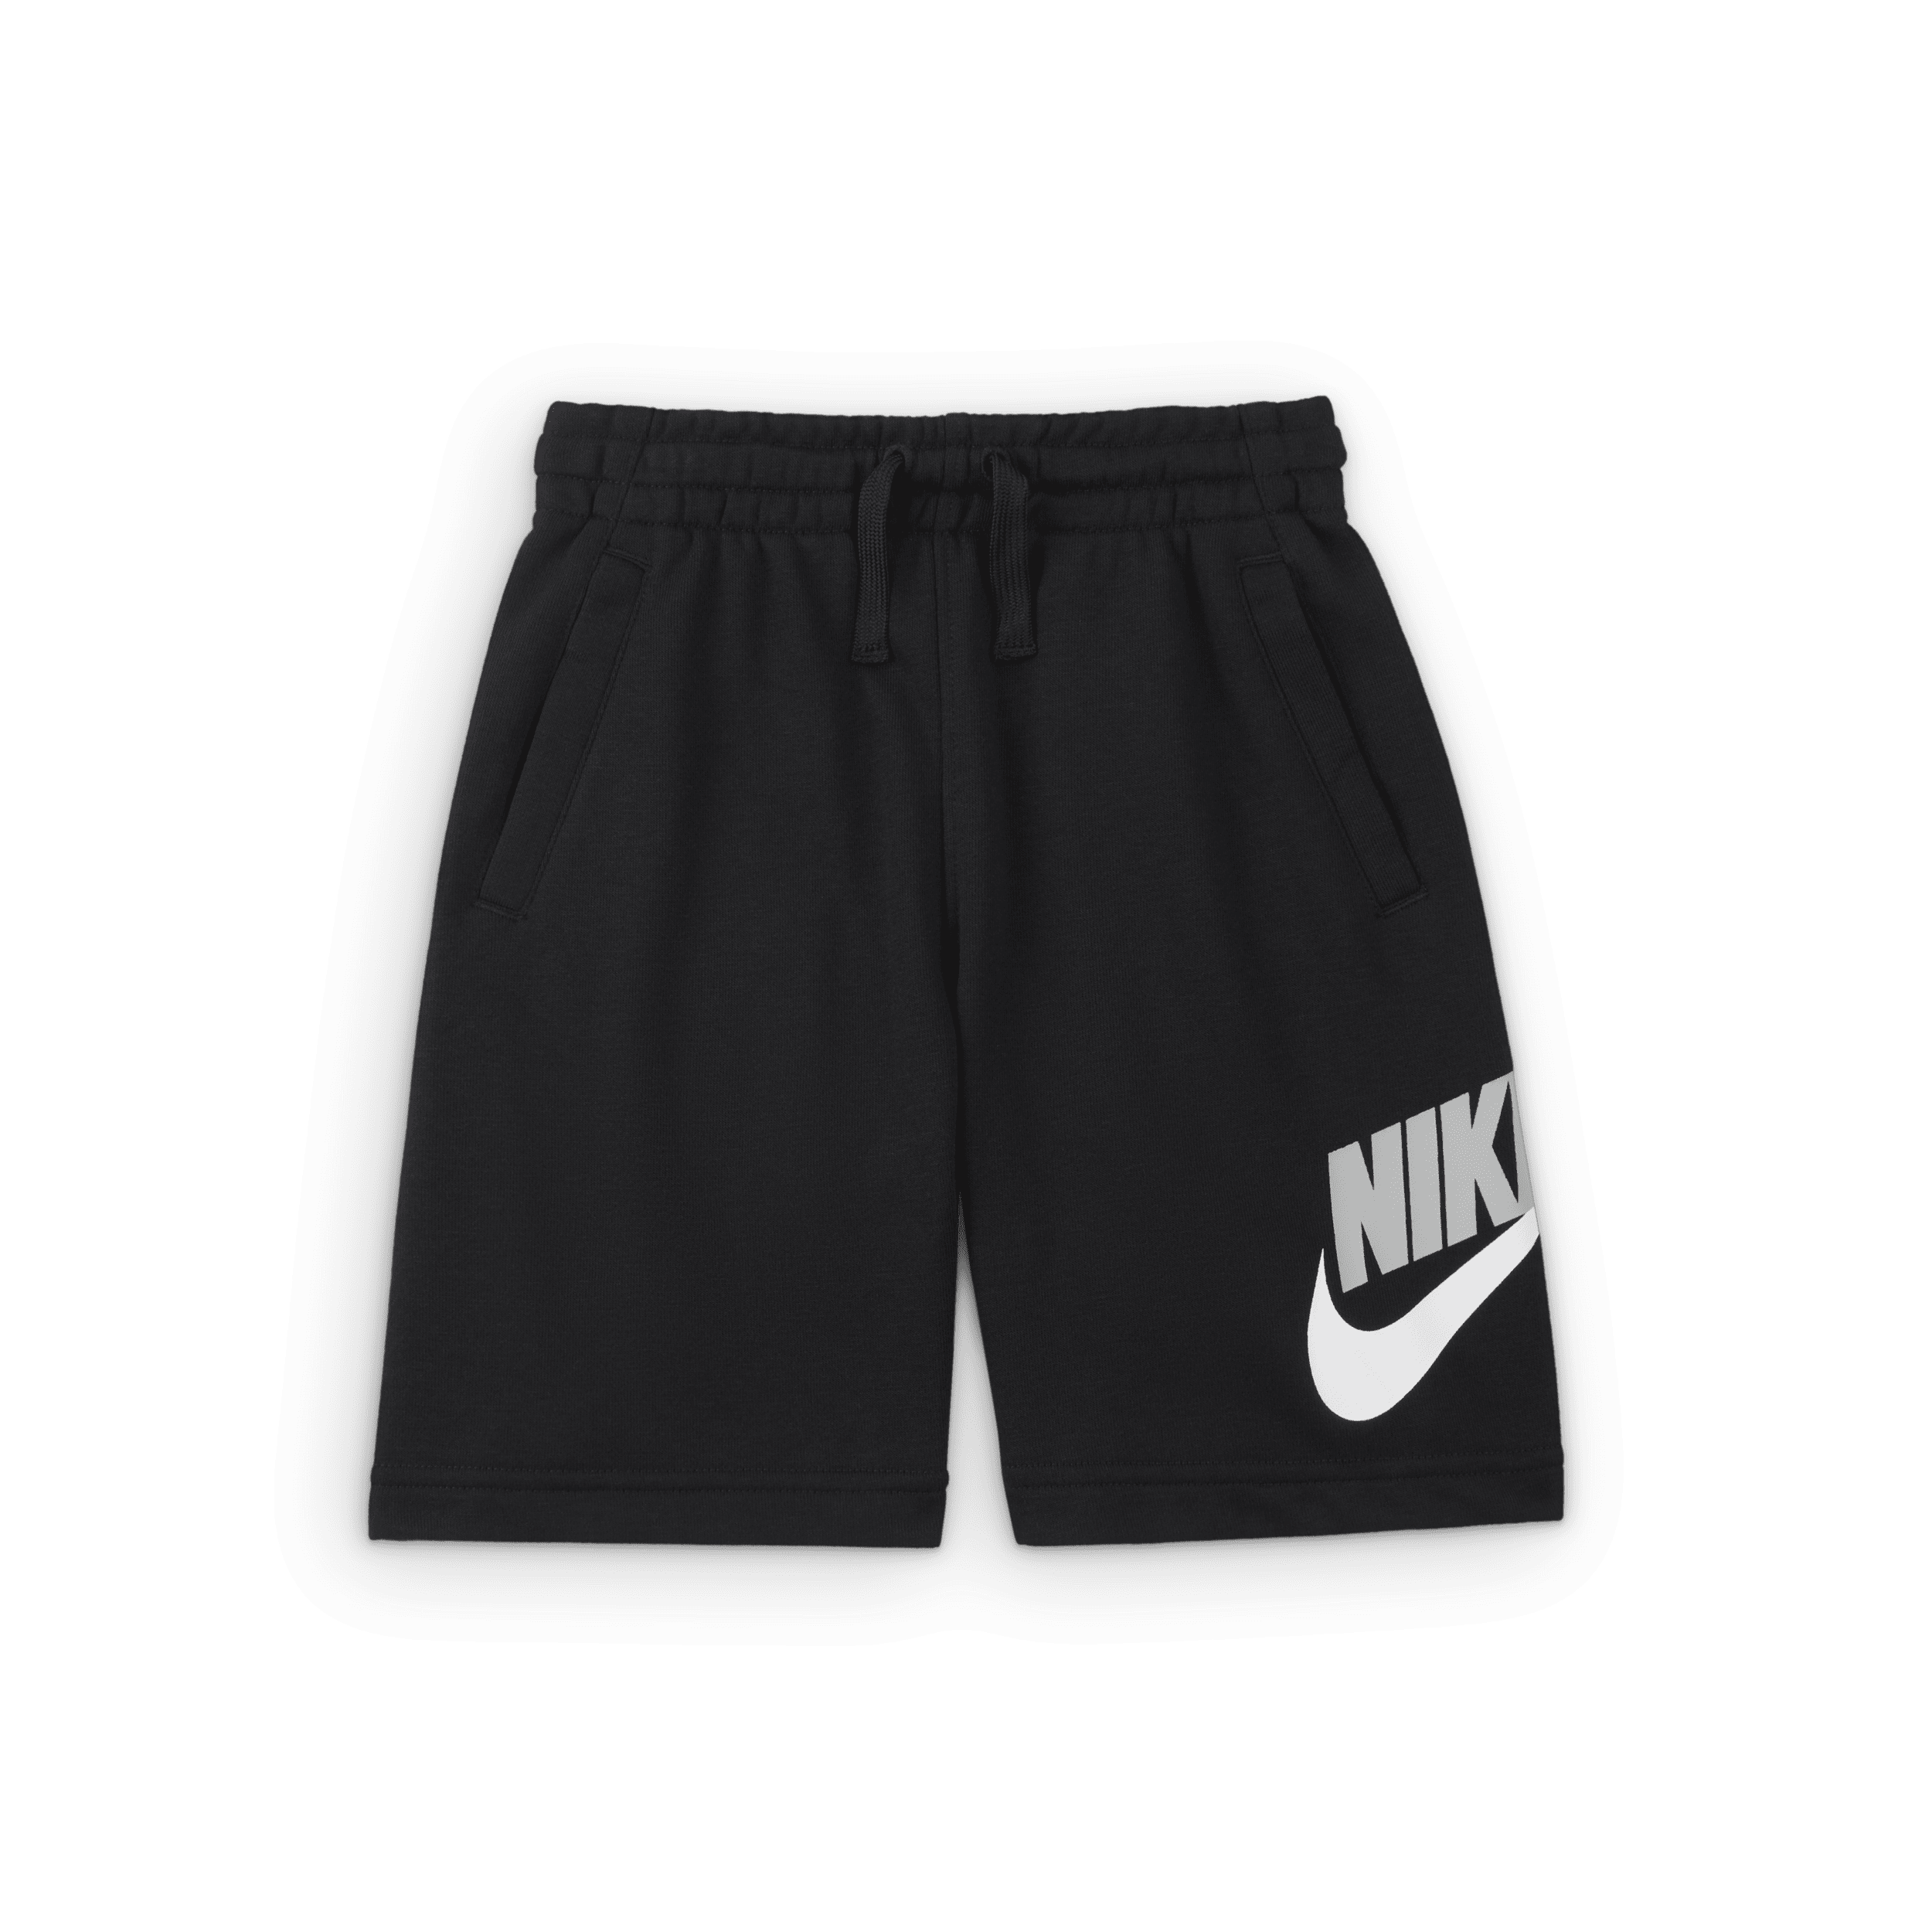 Shorts Nike – Bambino/a - Nero